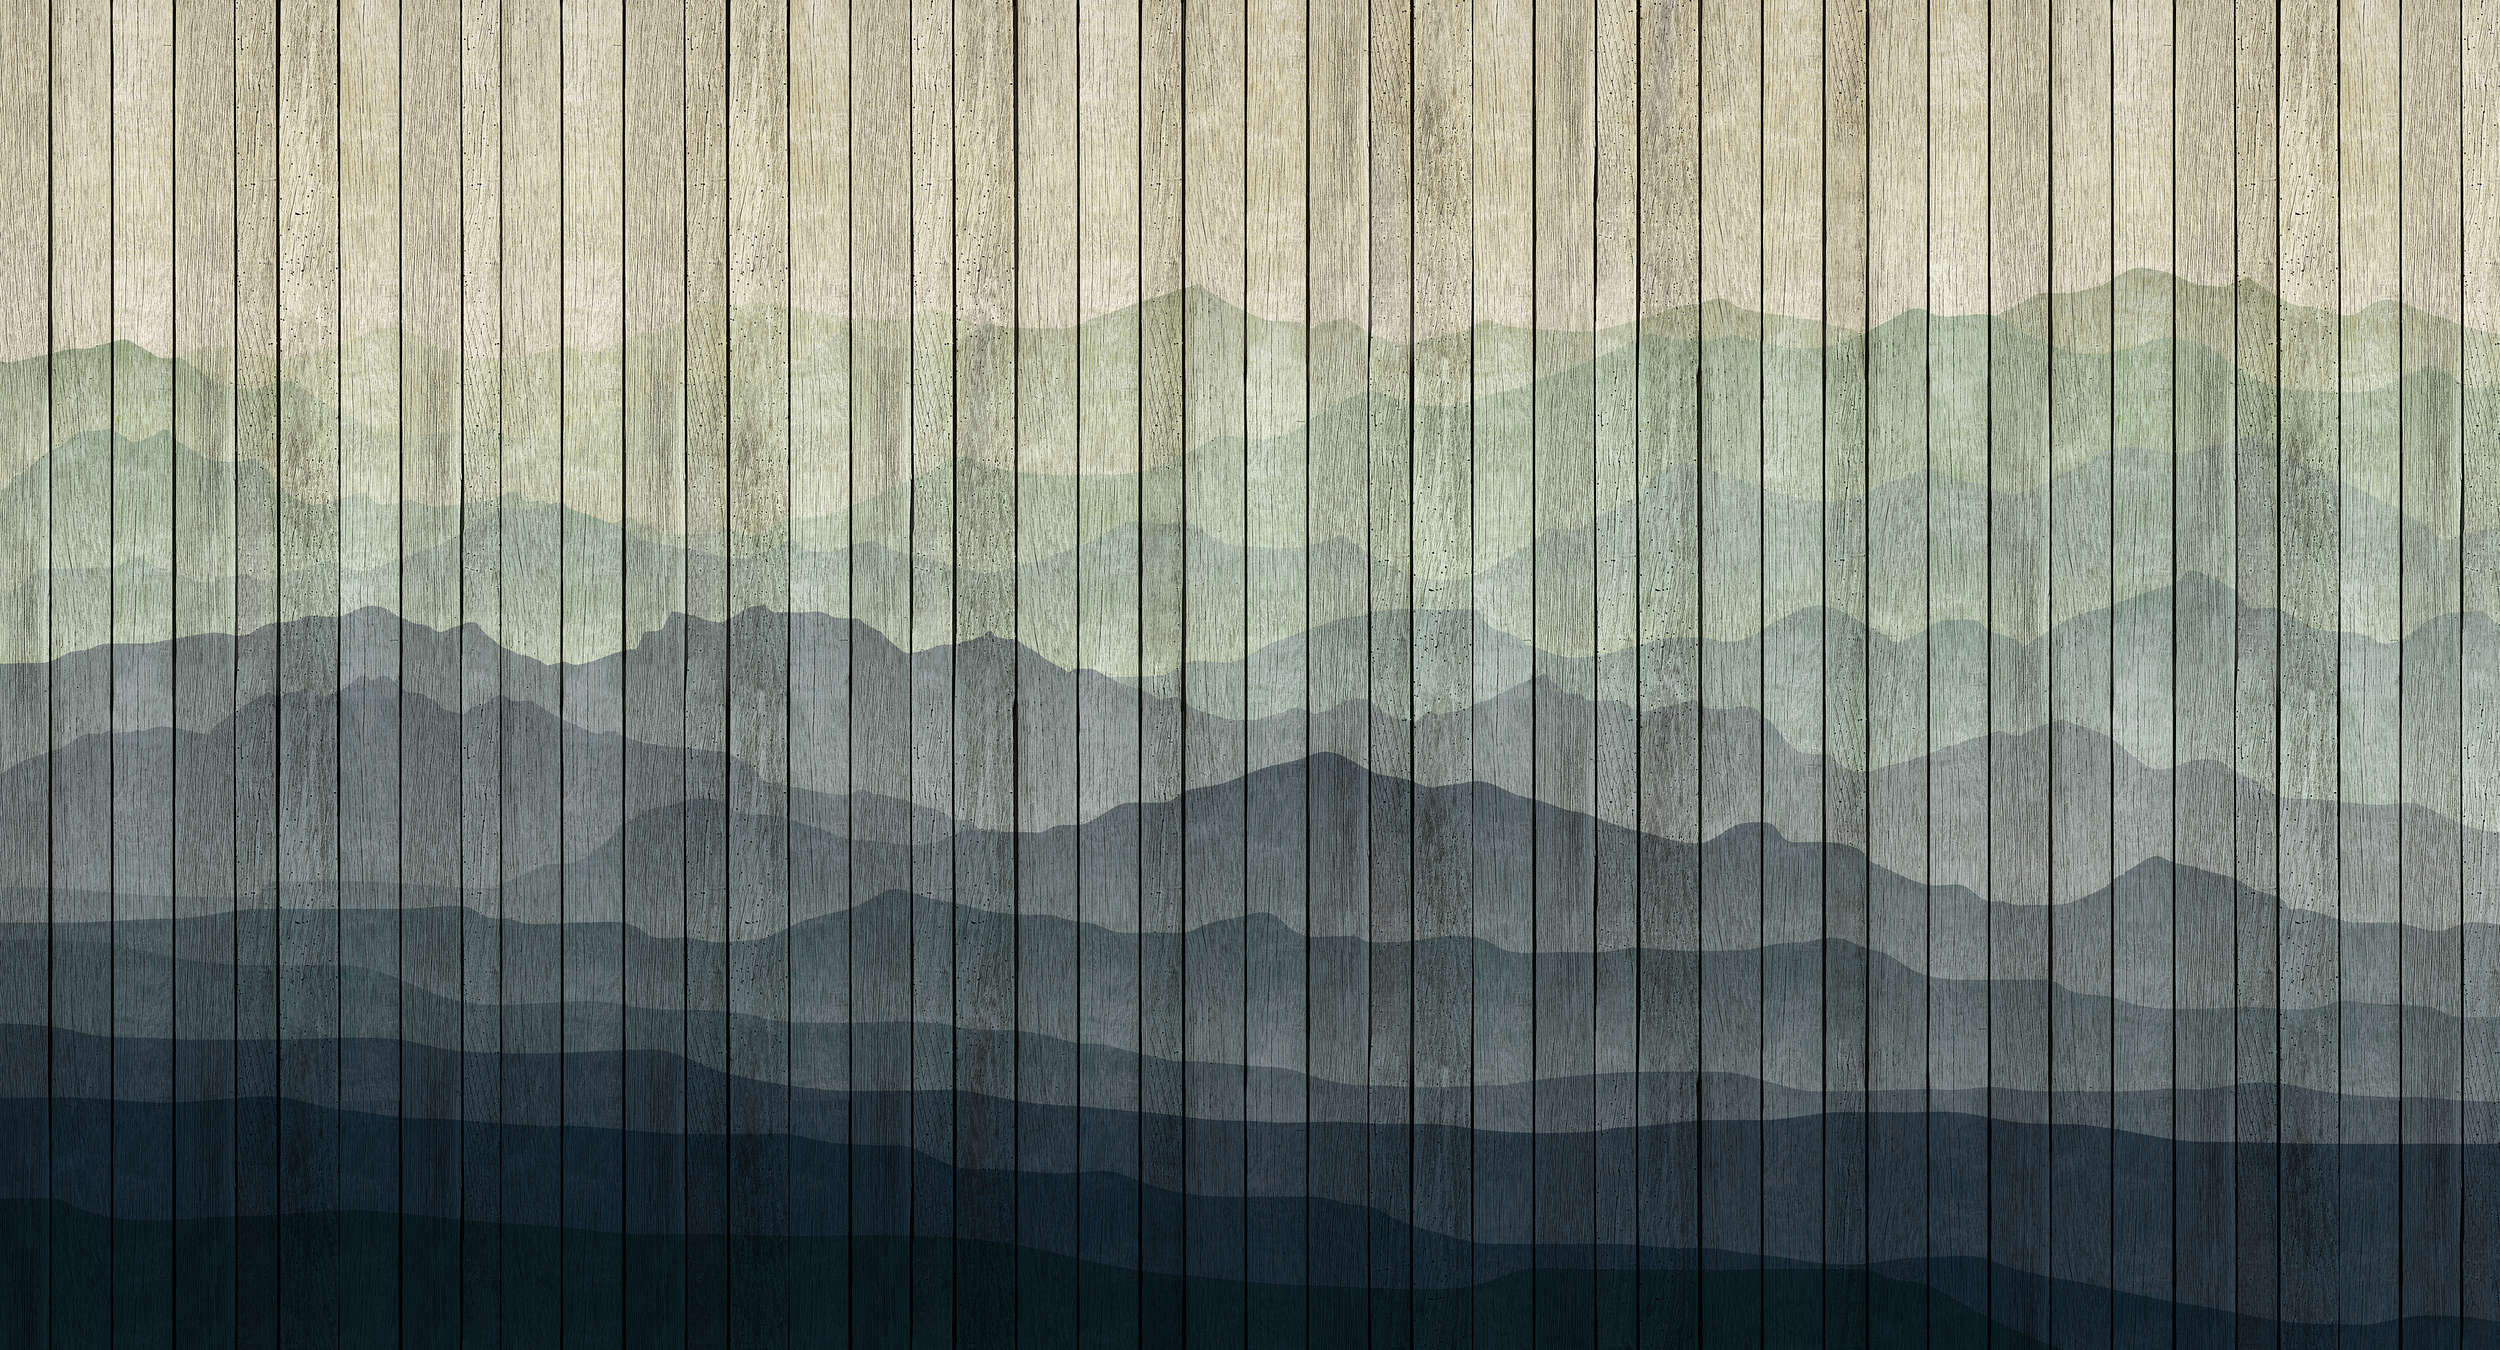             Mountains 1 - Carta da parati moderna Paesaggio di montagna e ottica - Beige, Blu | Perla Materiali non tessuto liscio
        